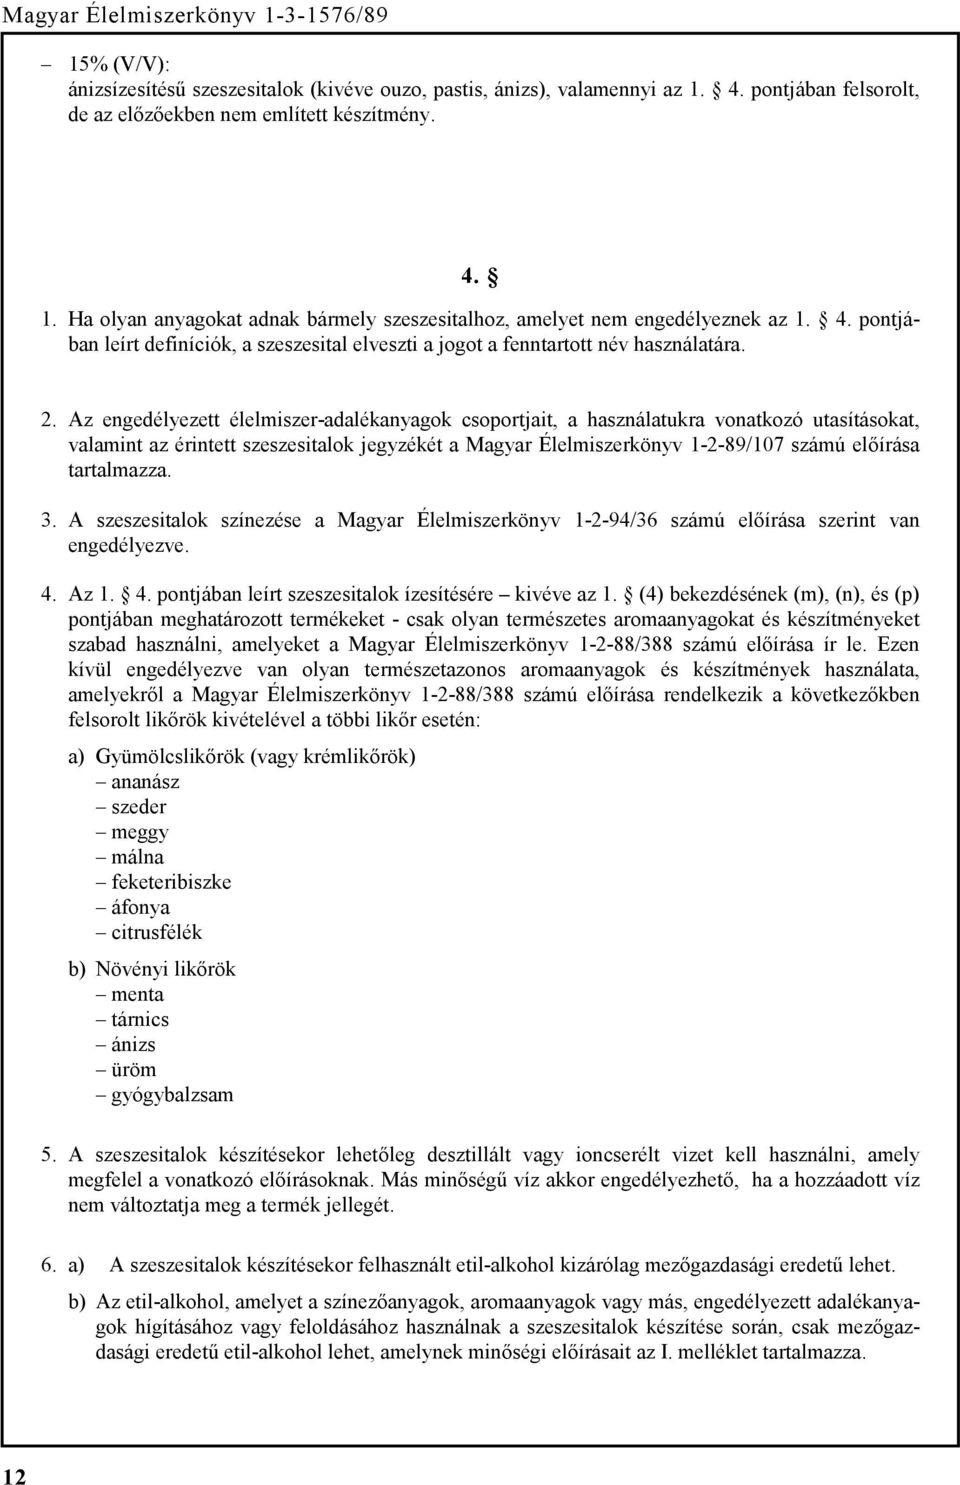 Az engedélyezett élelmiszer-adalékanyagok csoportjait, a használatukra vonatkozó utasításokat, valamint az érintett szeszesitalok jegyzékét a Magyar Élelmiszerkönyv 1-2-89/107 számú előírása